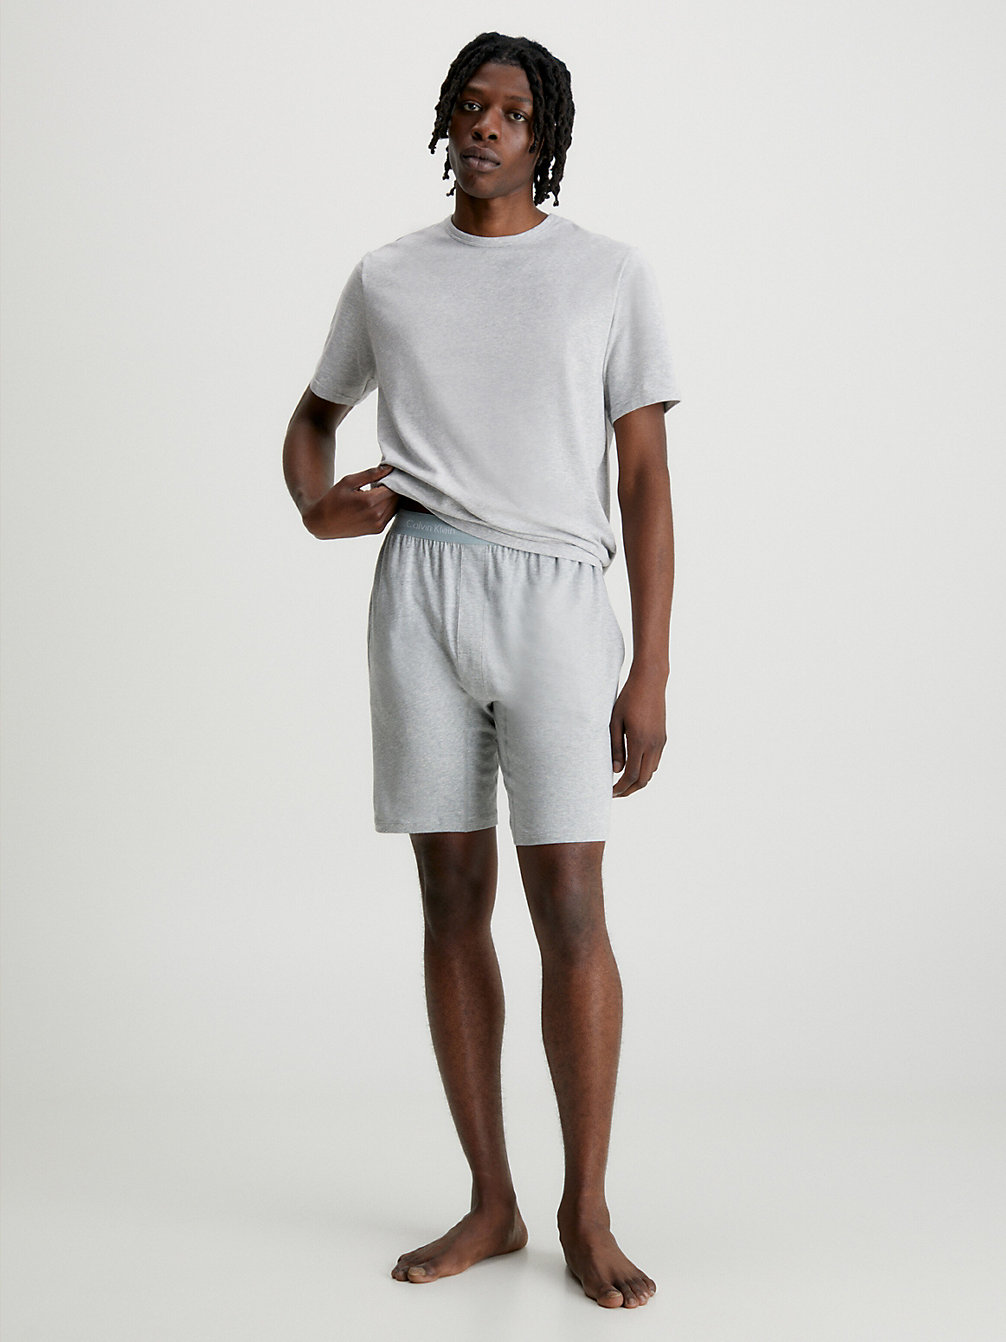 GREY HEATHER > Shorts-Pyjama-Set - Cotton Stretch > undefined Herren - Calvin Klein